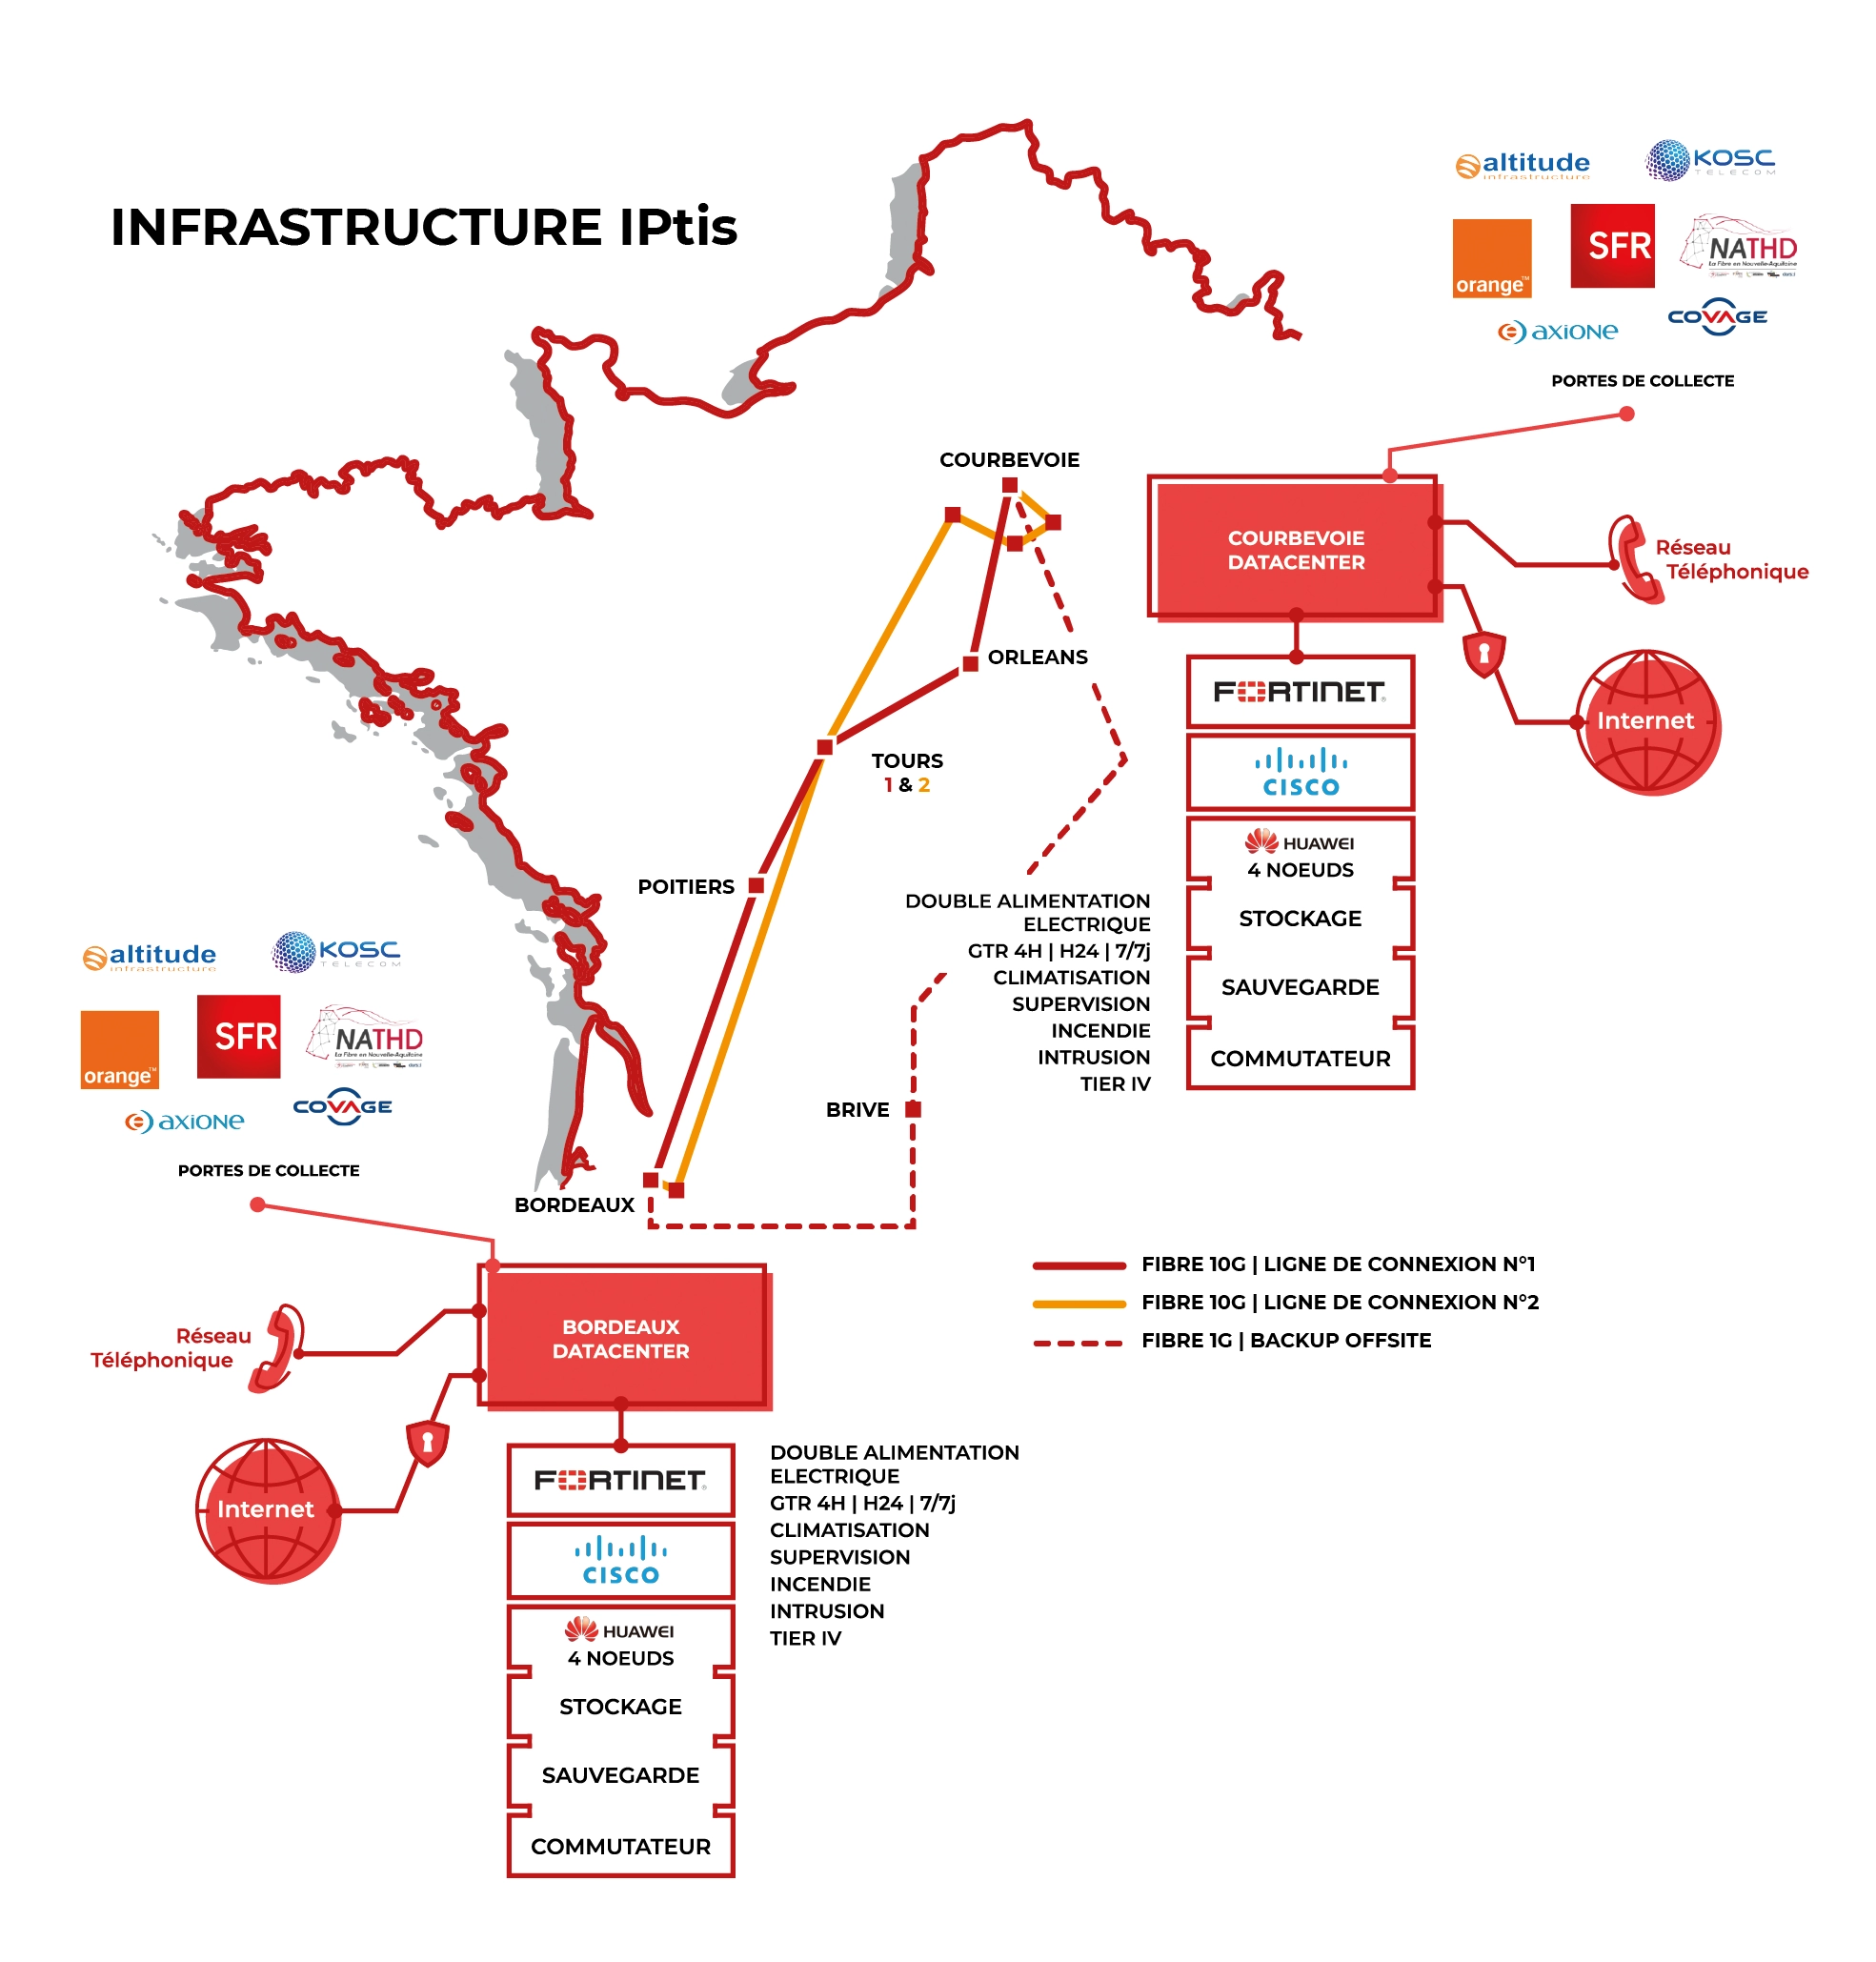 Infrastructure IPtis